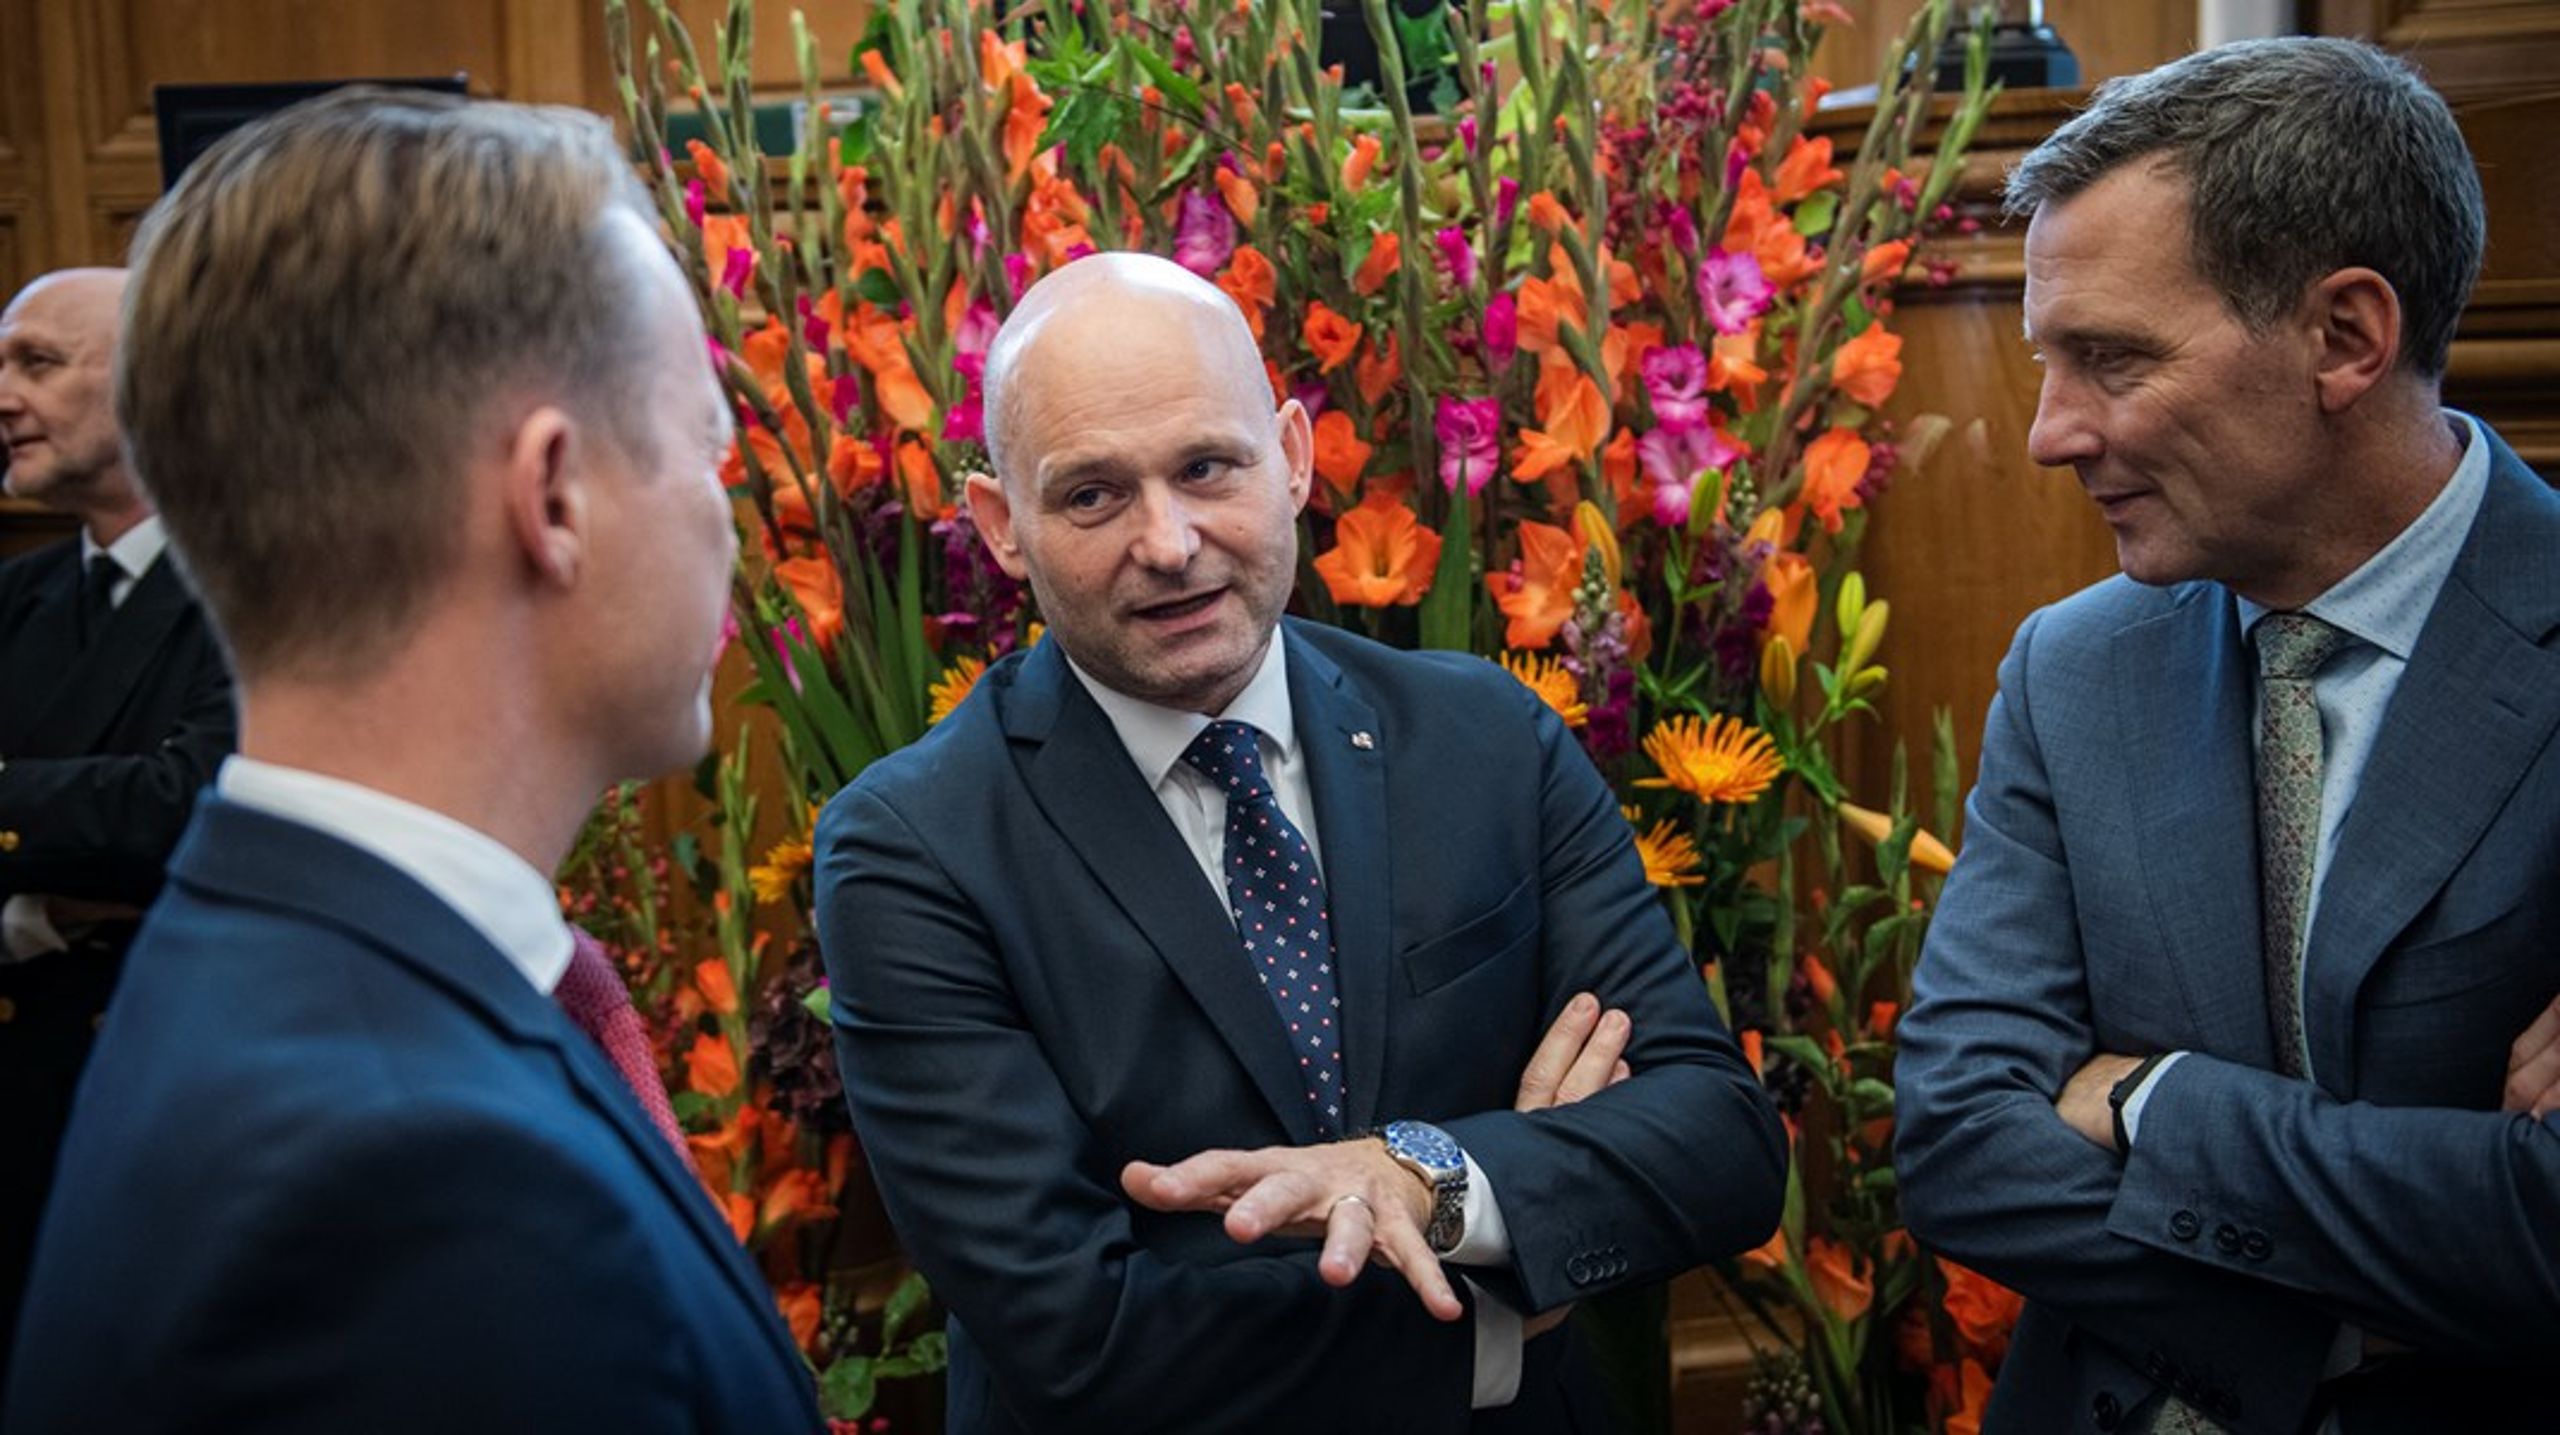 Både K-formand Søren Pape Poulsen, udenrigsminister Jeppe Kofod og justitsminister Nick Hækkerup deltager ved forhandlingerne.